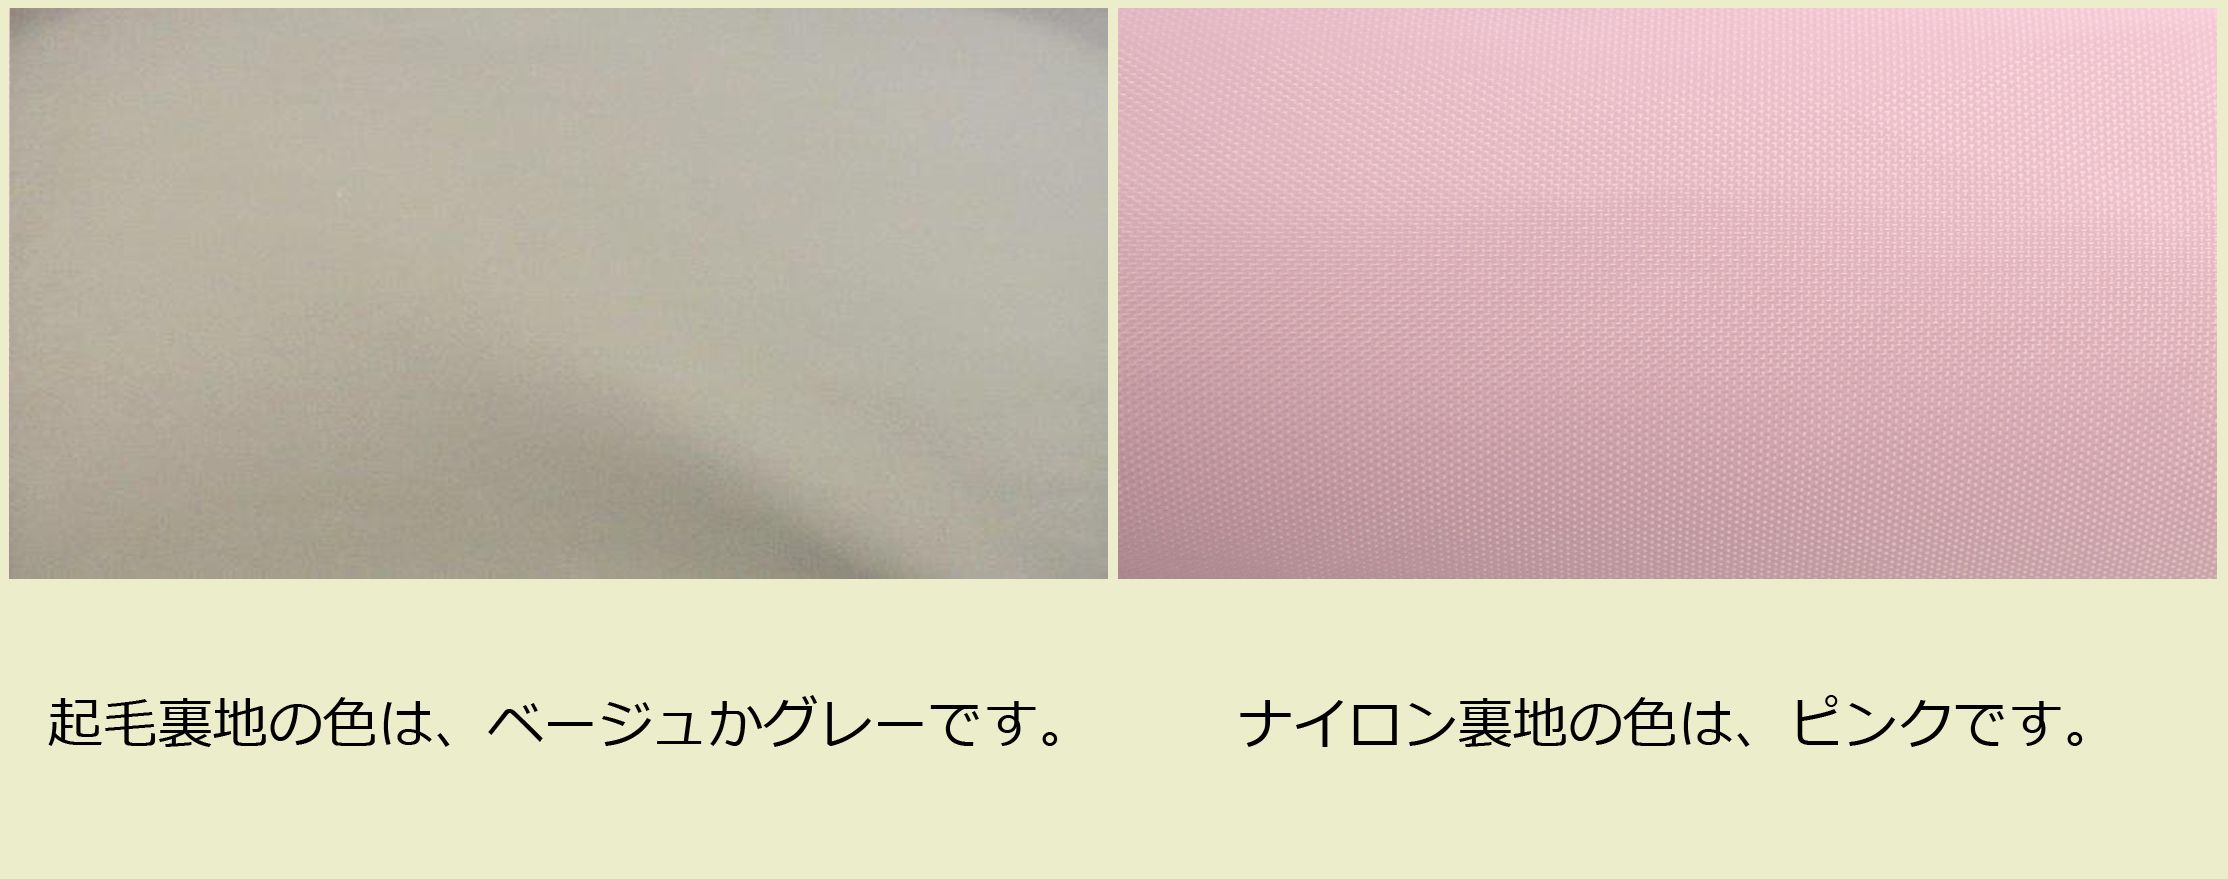 画像: 2コンパート ブリーフケース「Deniro/wf」（フルート・オーボエ・クラリネット対応）ピュアホワイト / ピンク